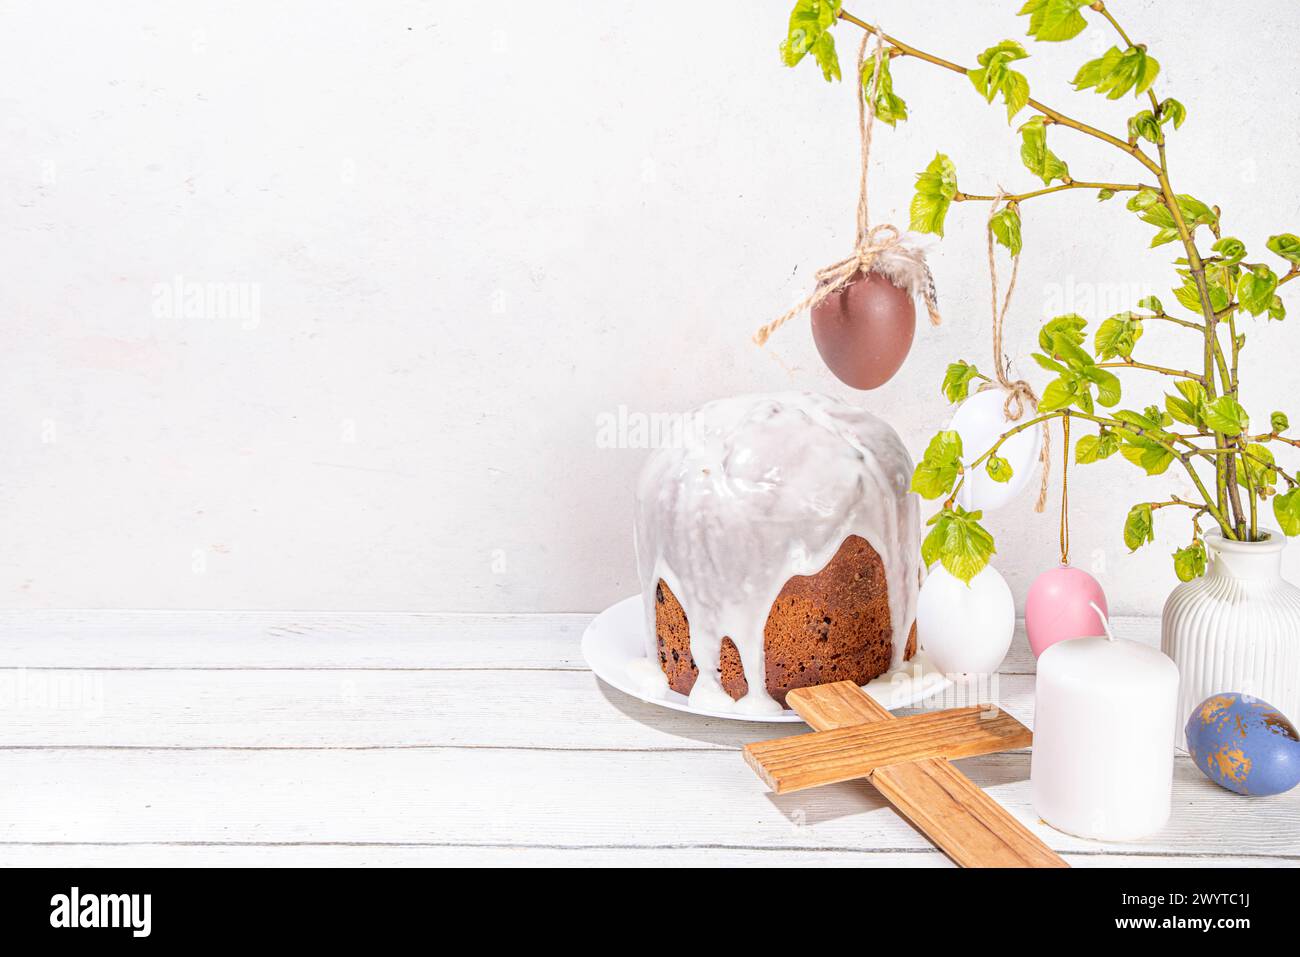 Fond de vacances chrétiennes orthodoxes catholiques de Pâques, avec symbole de croix en bois de la religion, cuisson du gâteau de Pâques avec glaçage au sucre, oeuf peint coloré Banque D'Images